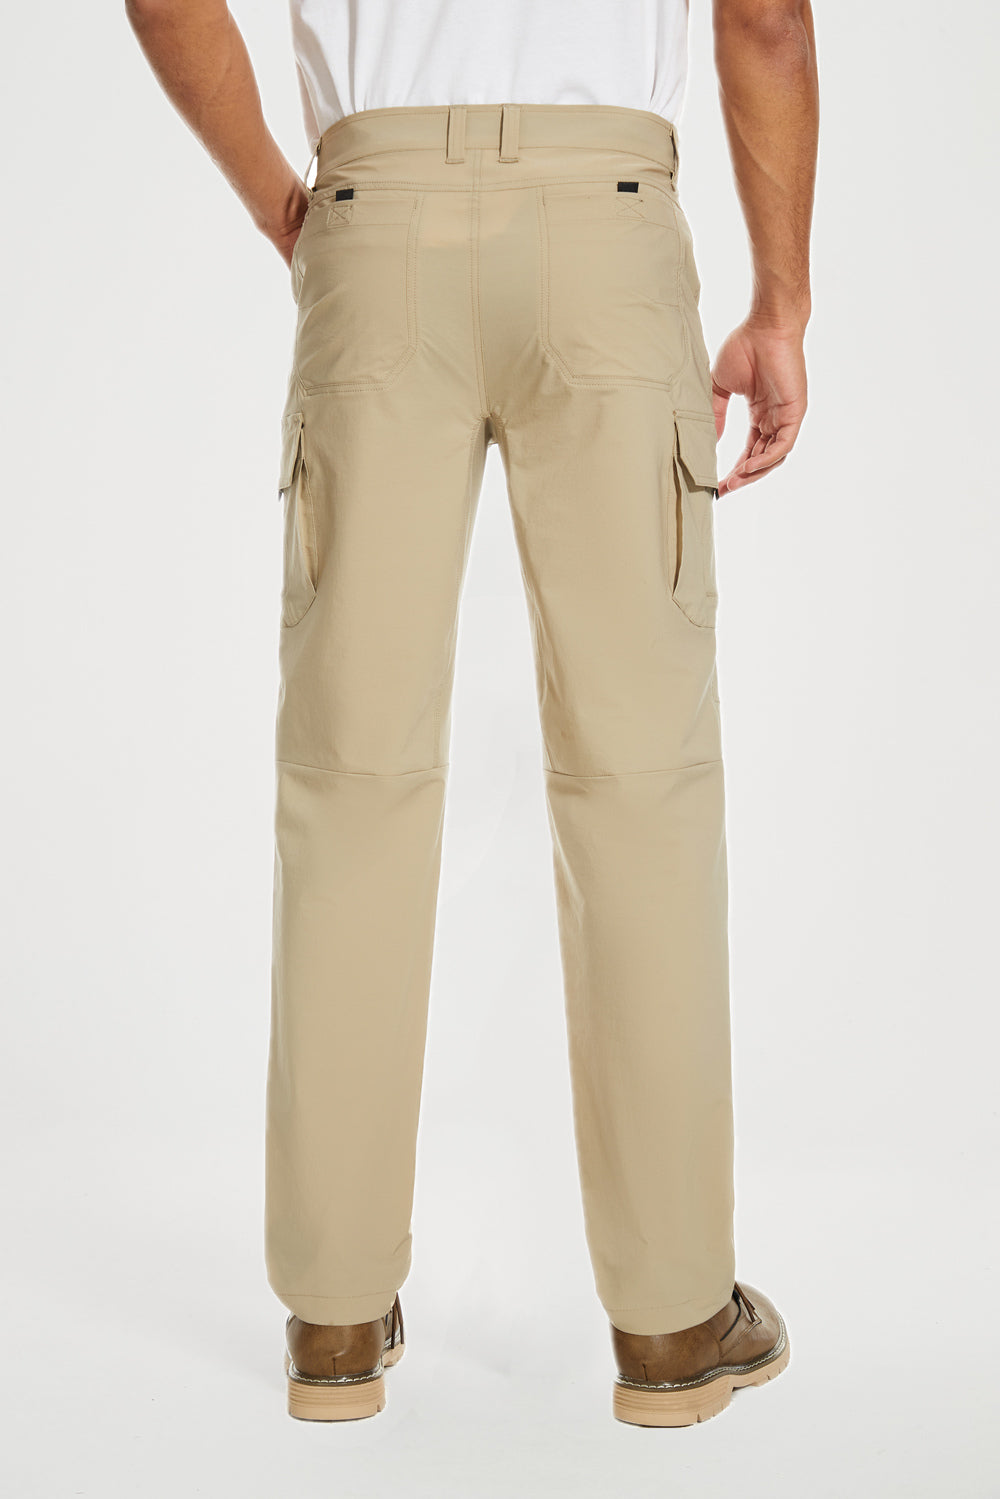 Men's Hiking Pants Waterproof Outdoor Cargo Pants with Zipper